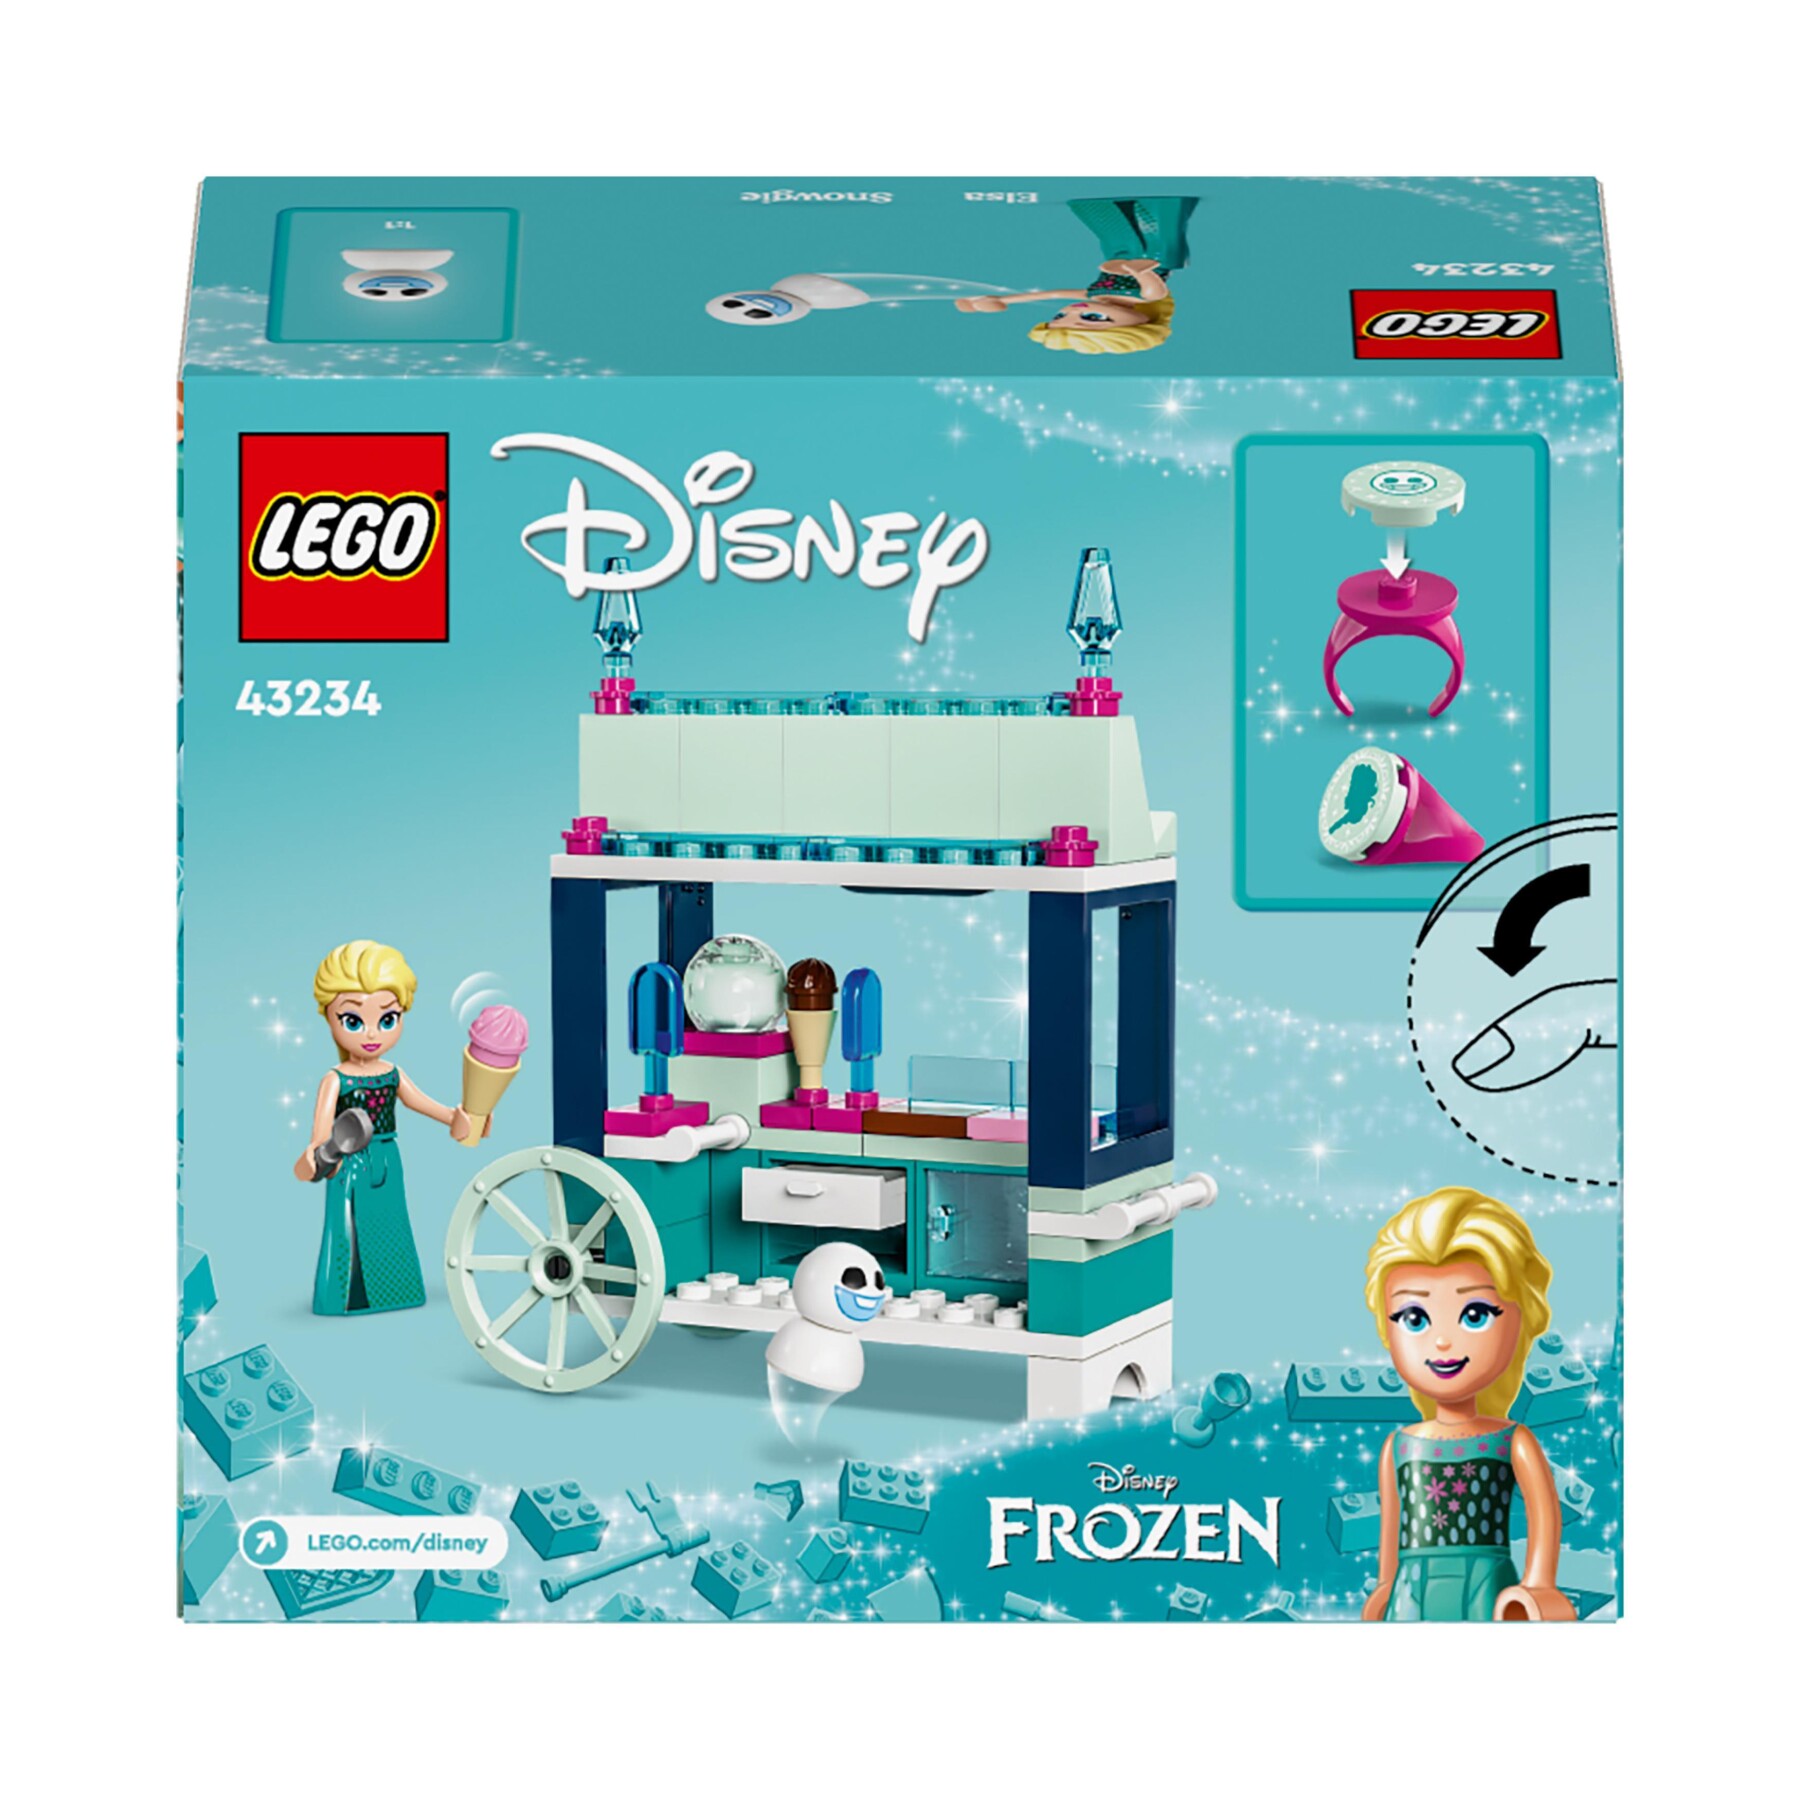 Lego disney princess 43234 le delizie al gelato di elsa frozen, carretto dei gelati delle principesse, giochi per bambini 5+ - DISNEY PRINCESS, LEGO DISNEY PRINCESS, Frozen